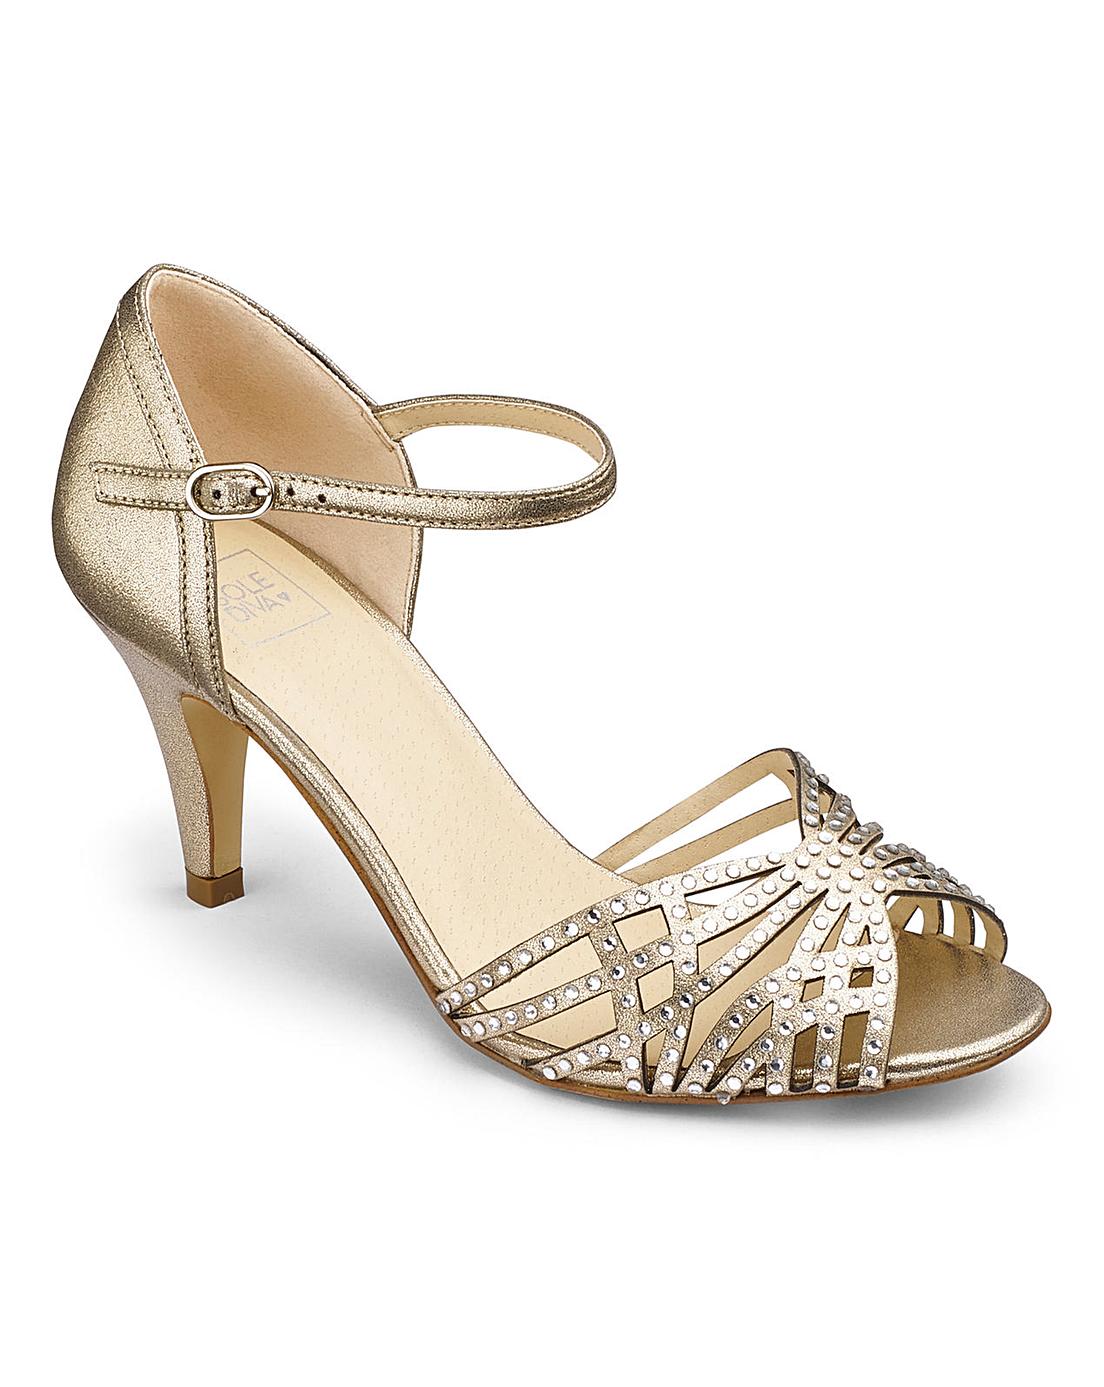 Sole Diva Diamante Sandals EEE Fit | VivaLaDiva.com